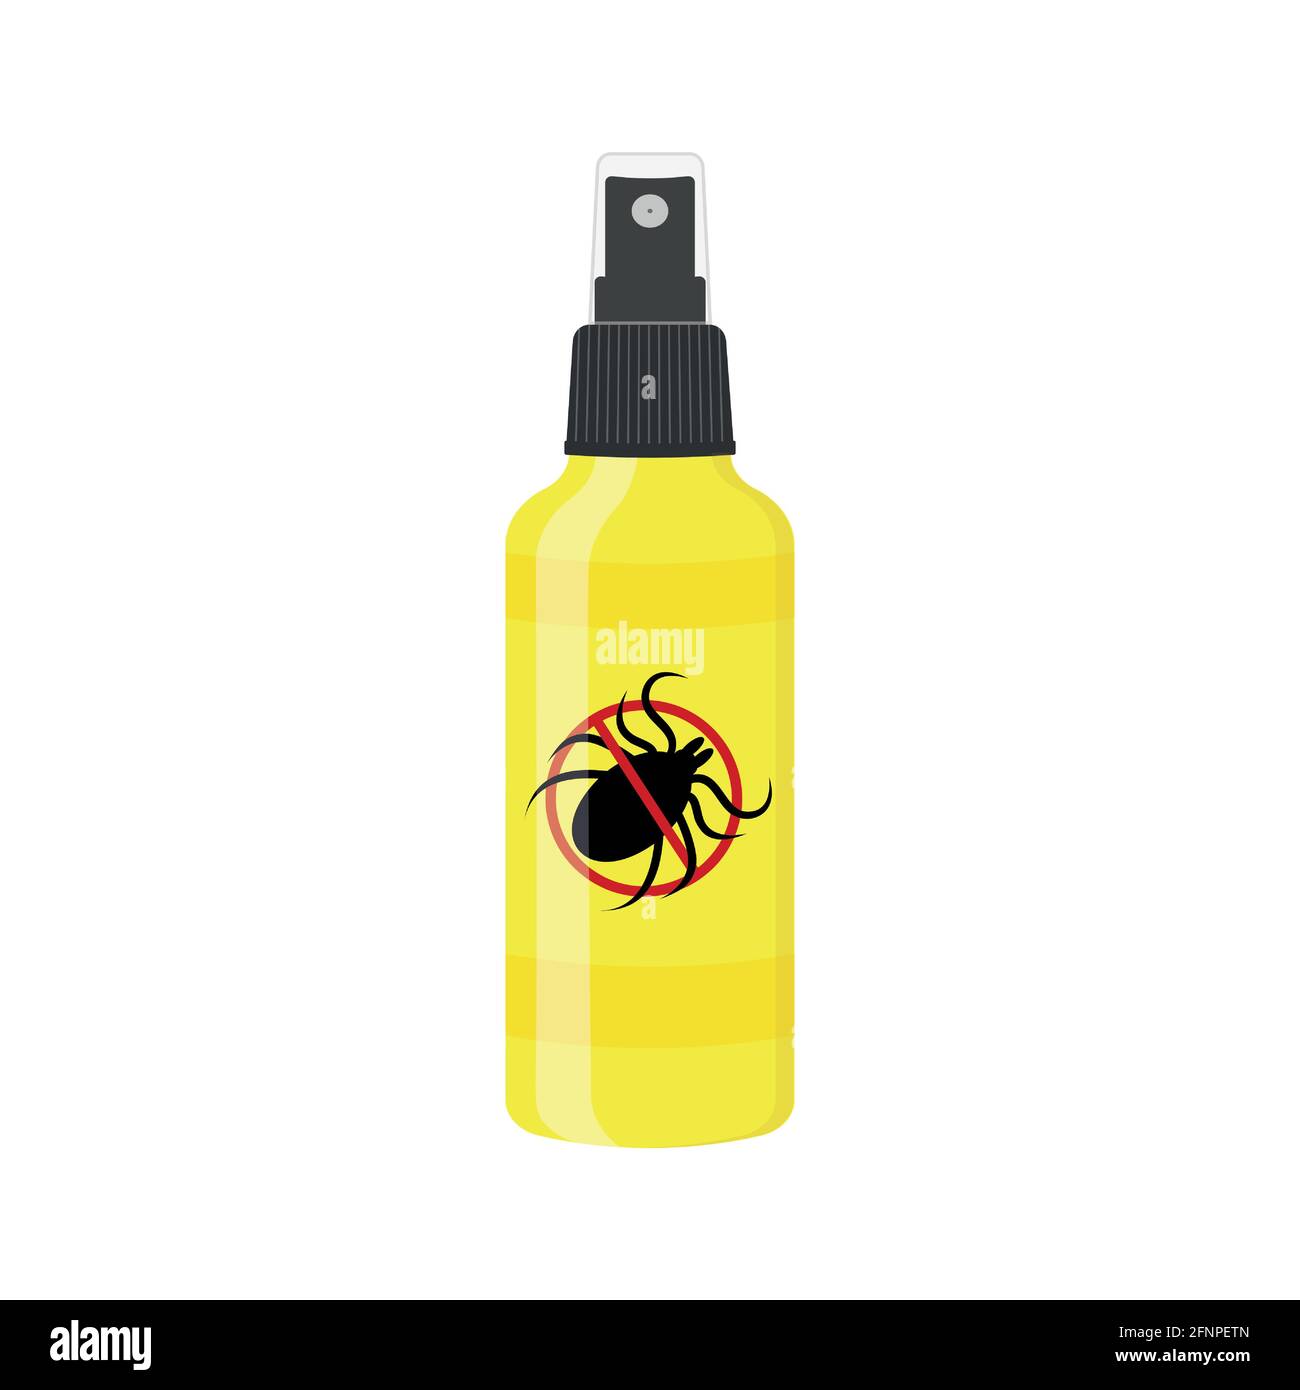 Milbenspray-Symbol auf weißem Hintergrund isoliert. Abstoßende Insektenflasche mit verbotener Anti-Zecken-Markierung. Lyme-Borreliose Prävention. Vektorgrafik Cartoon-Illustration. Stock Vektor